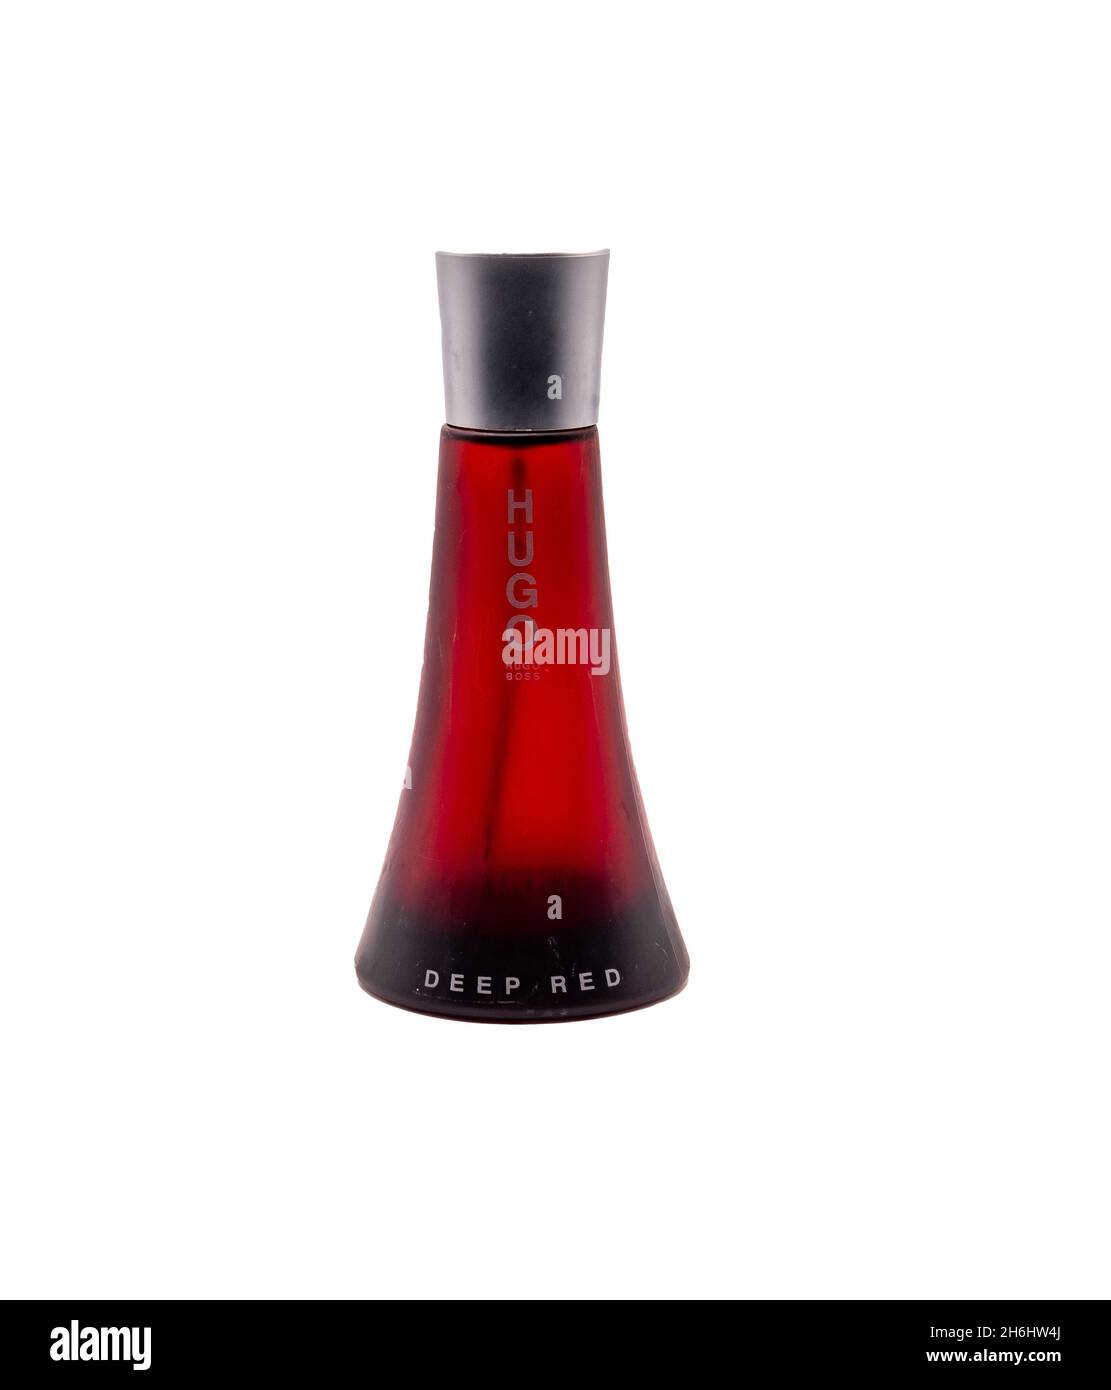 Hugo Boss Deep Red Perfume Price Discount Shopping, 51% OFF | vagabond3.com